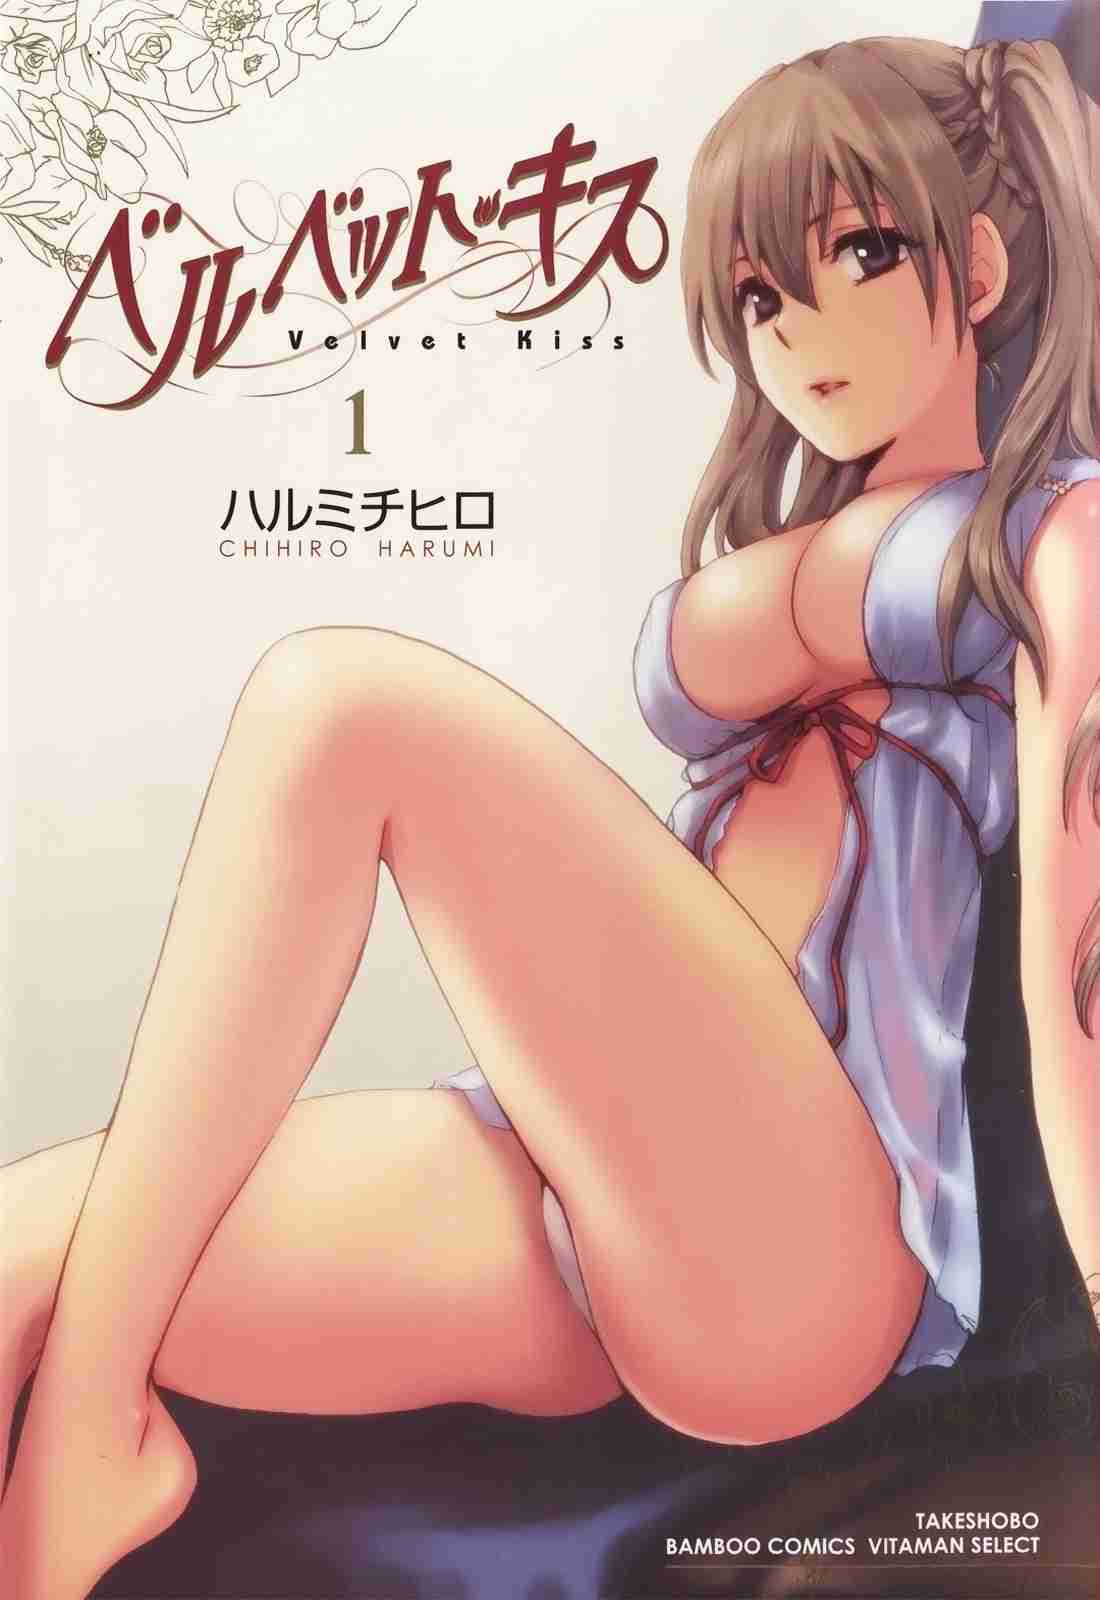 Reading Velvet Kiss Original Hentai By Harumi Chihiro 1 Velvet Kiss Page 1 Hentai Manga 7961